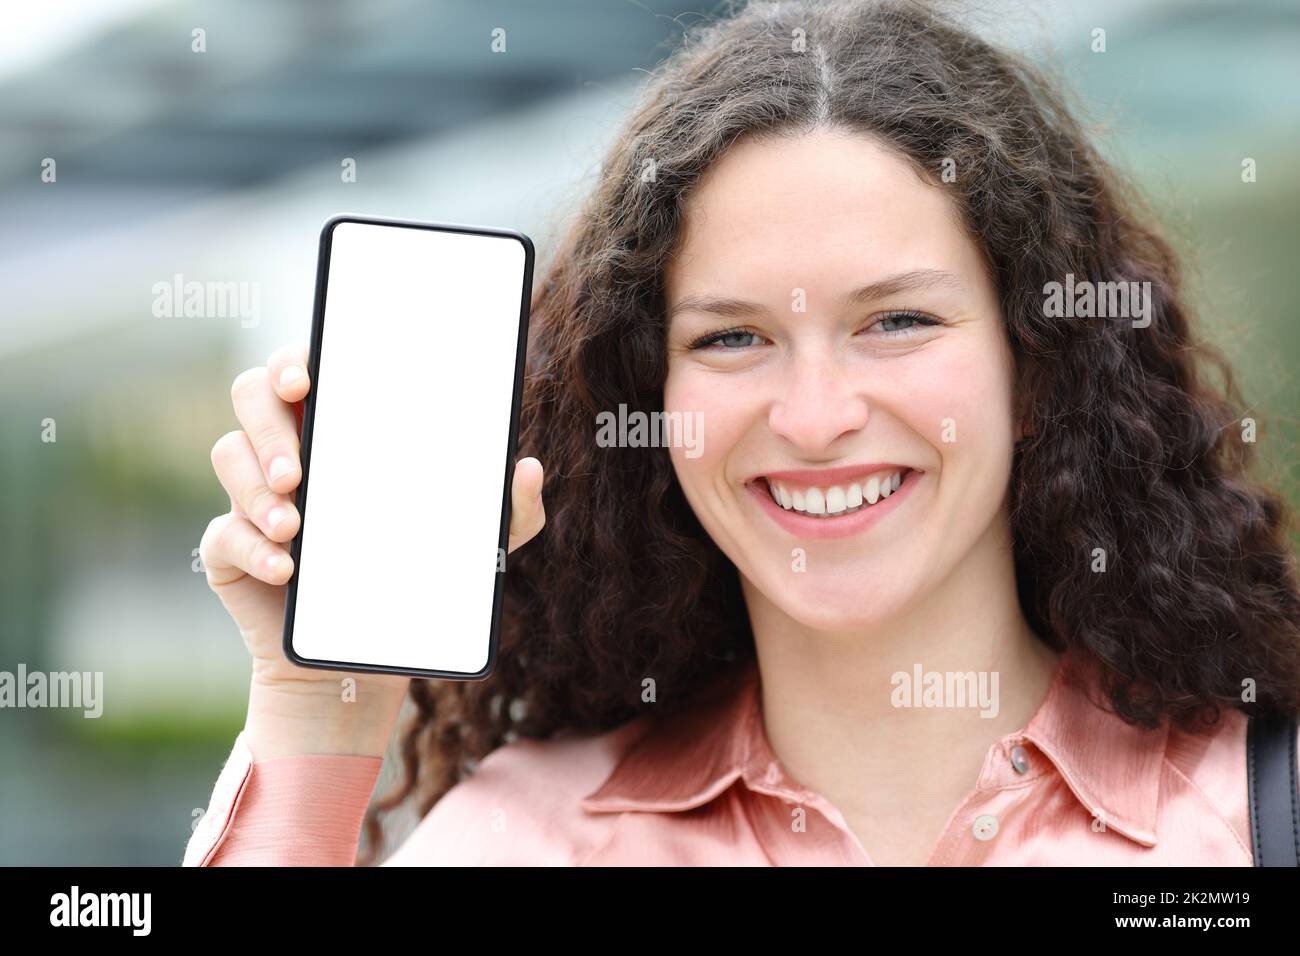 Une femme heureuse avec un chemisier montrant un écran de téléphone vierge Banque D'Images